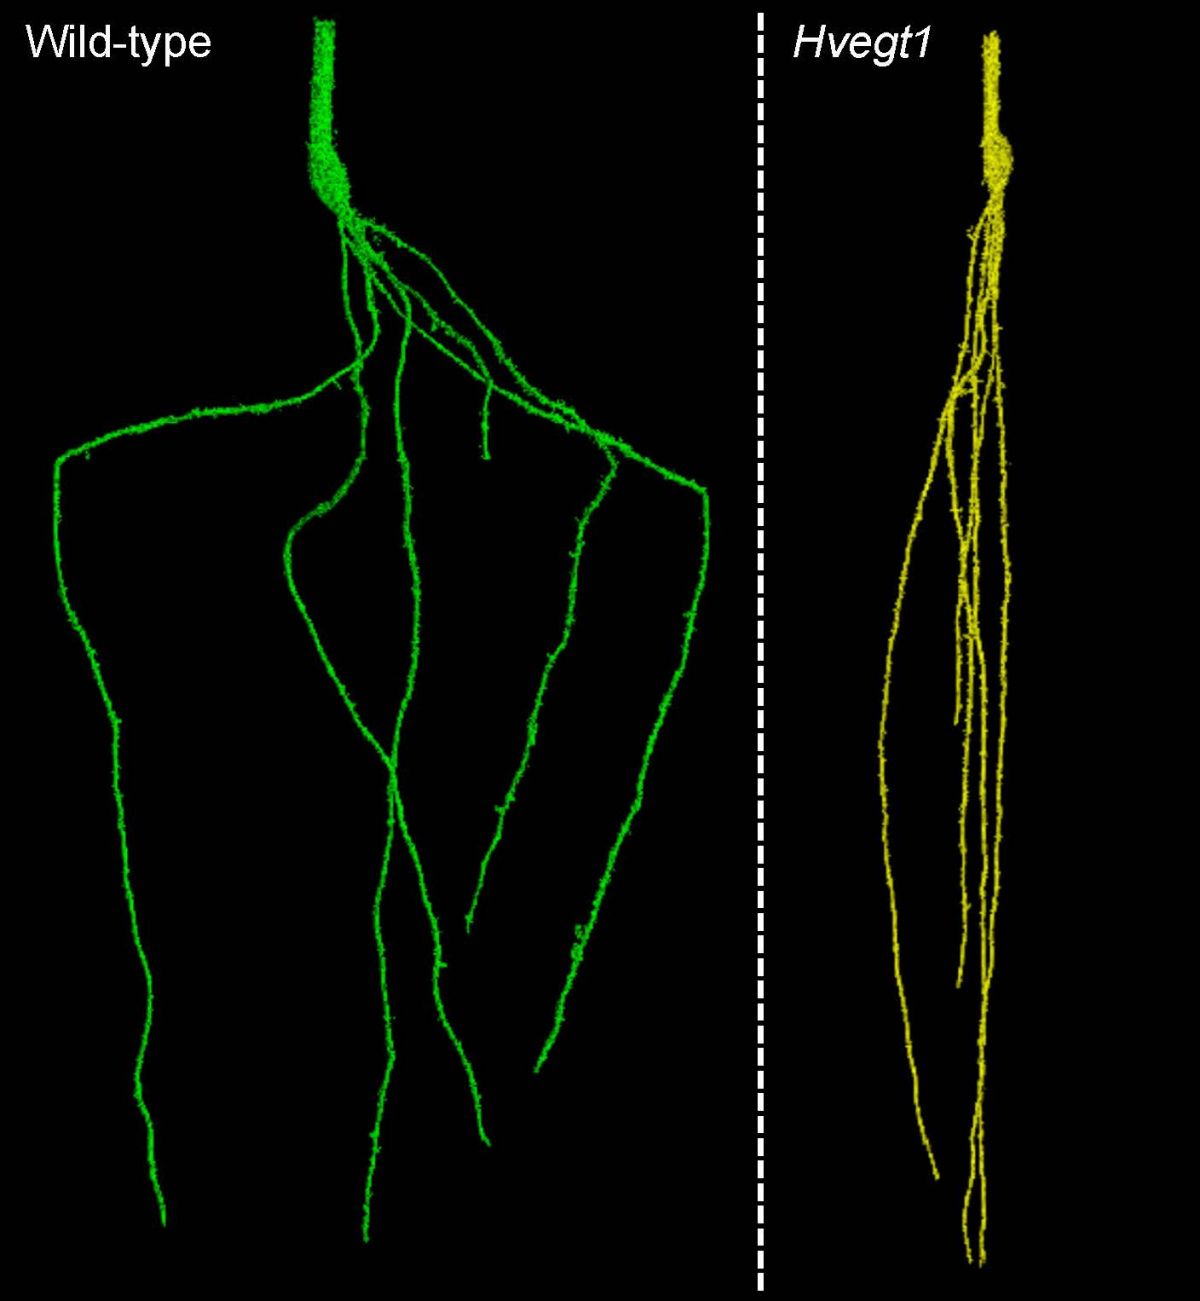 Vergleich der Wurzeln im Boden: Der unveränderte Wildtyp (links) und die experimentell veränderte Mutante (rechts) zeigen große Unterschiede im Wachstumswinkel der Wurzeln.
